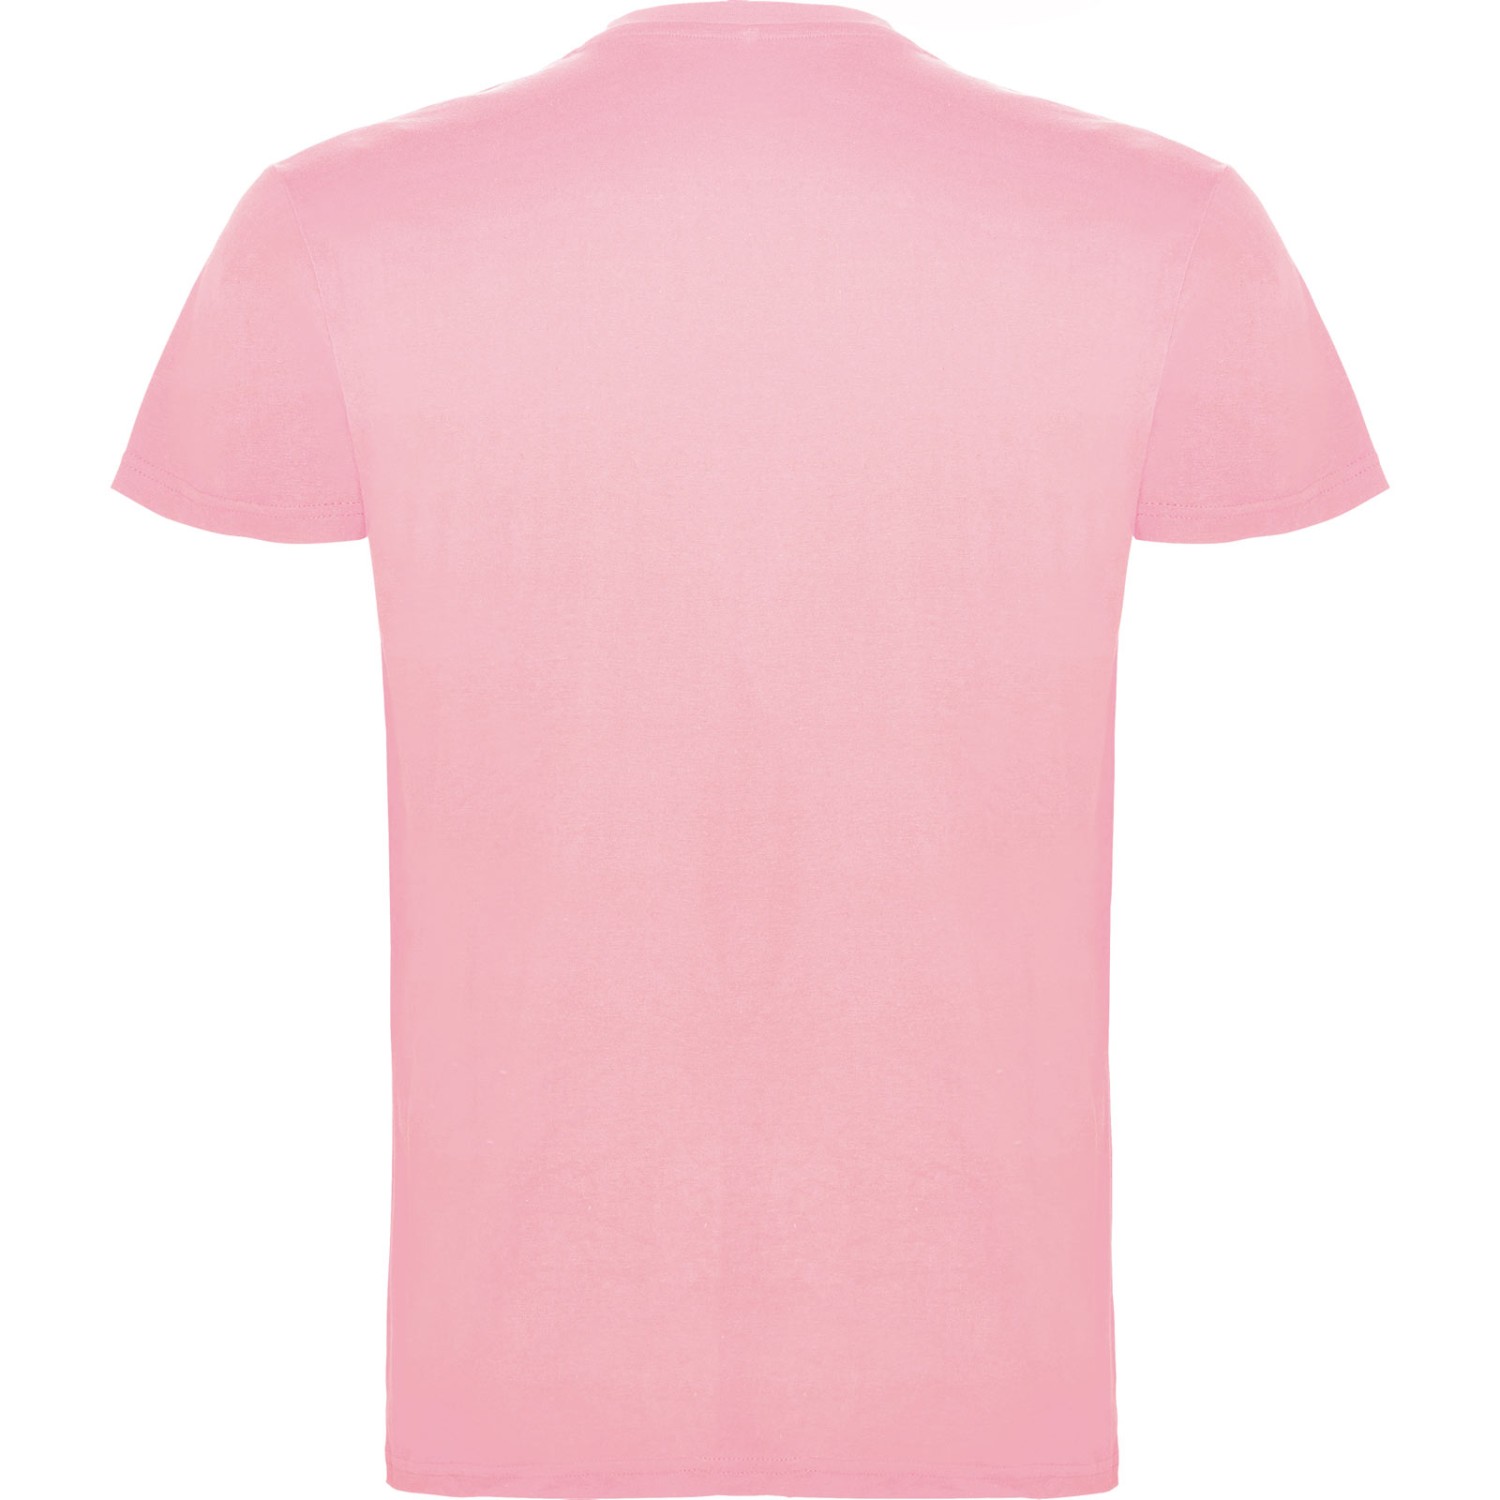 2. Foto T-Shirt BEAGLE Kurzarm Rundhals mit Druck (Farbe: light pink Größe: S)